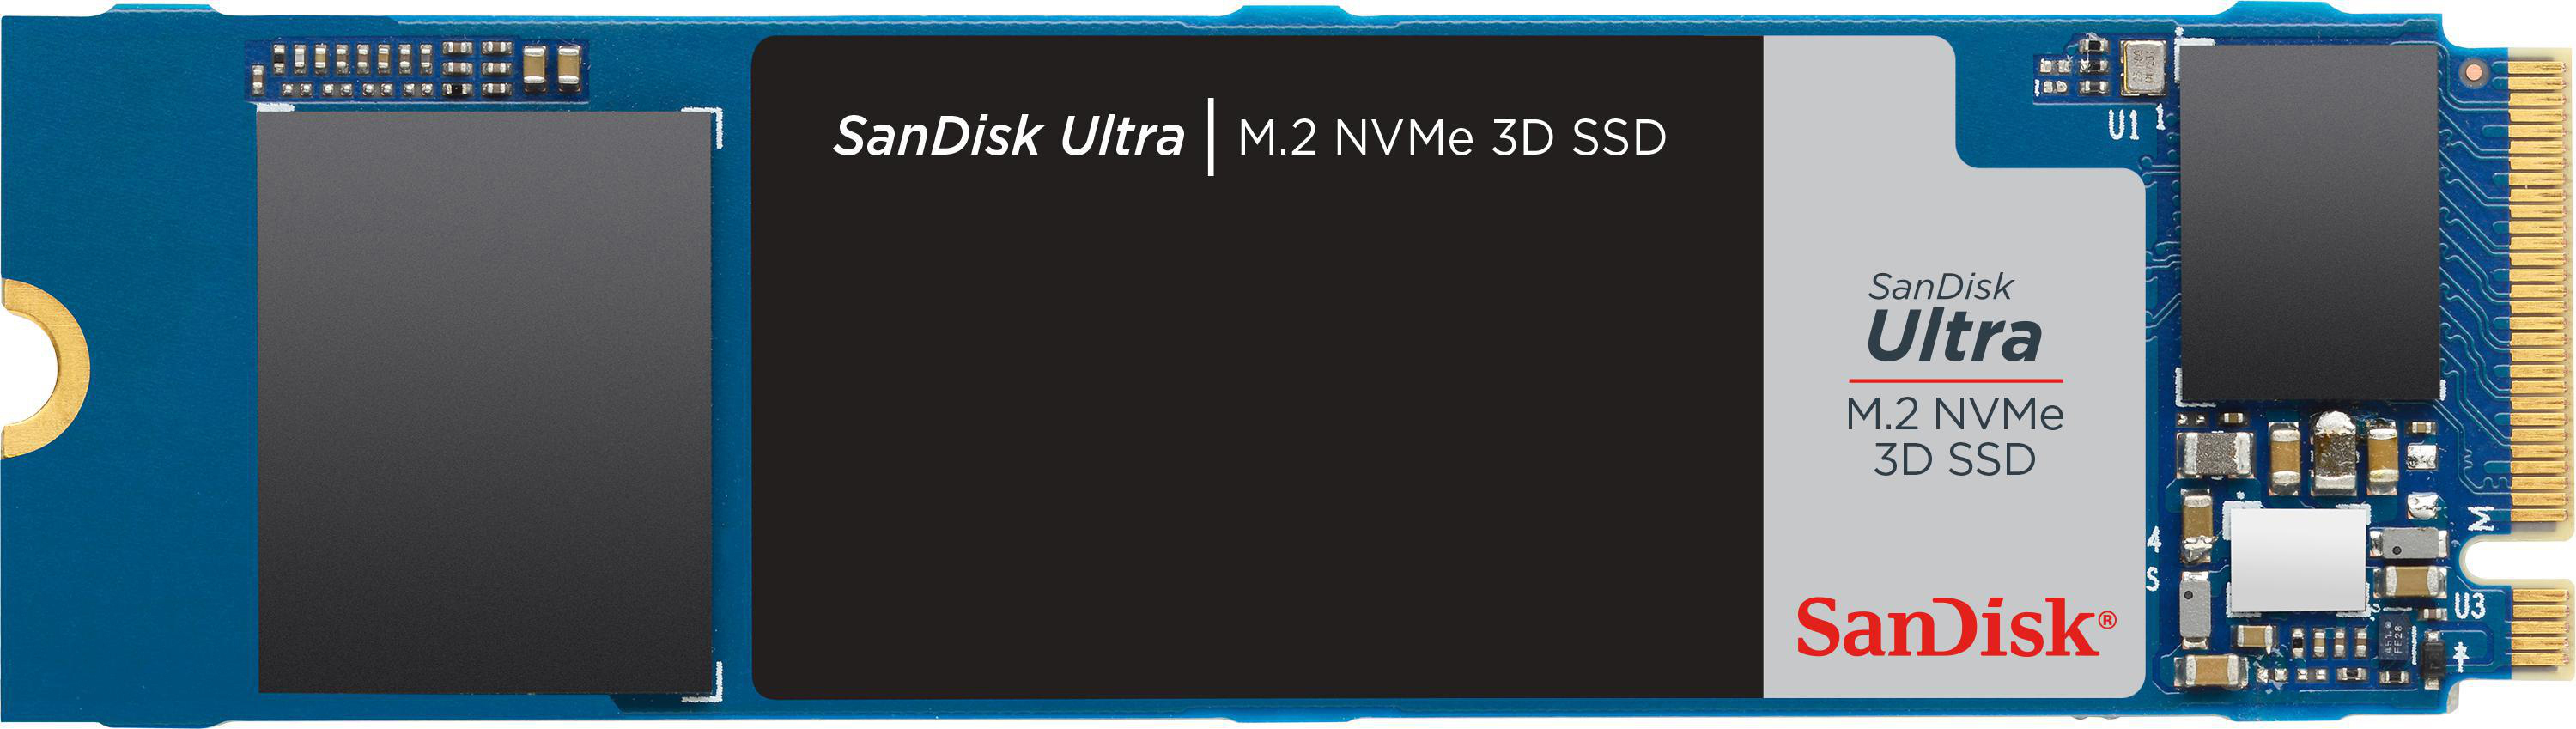 SANDISK Ultra 3D SSD NVMe, Speicher, intern M.2 GB Interner via 500 Speicher